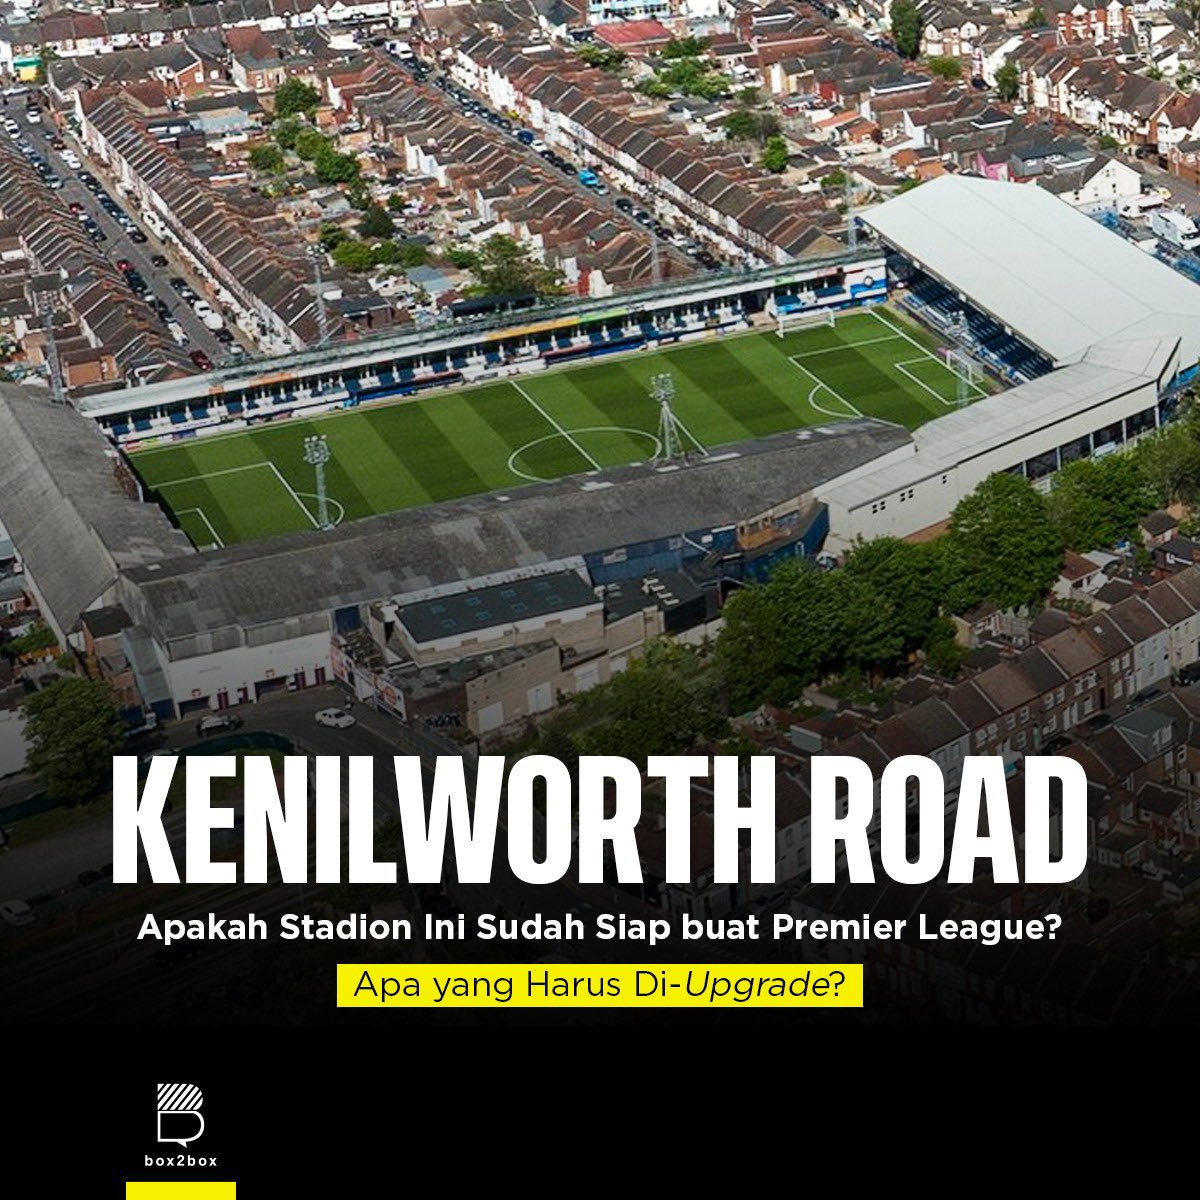 Kenilworth Road: Jadi Apa aja yang harus di-upgrade sama Luton Town buat berlaga di Premier League? Berikut penjelasannya 🤩

Kurang lebih, Luton Town harus merogoh kocek sebesar Rp148-185 milliar untuk renovasi stadion 💷

Btw stadion ini cuman berkapasitas 10.356 penonton 😳